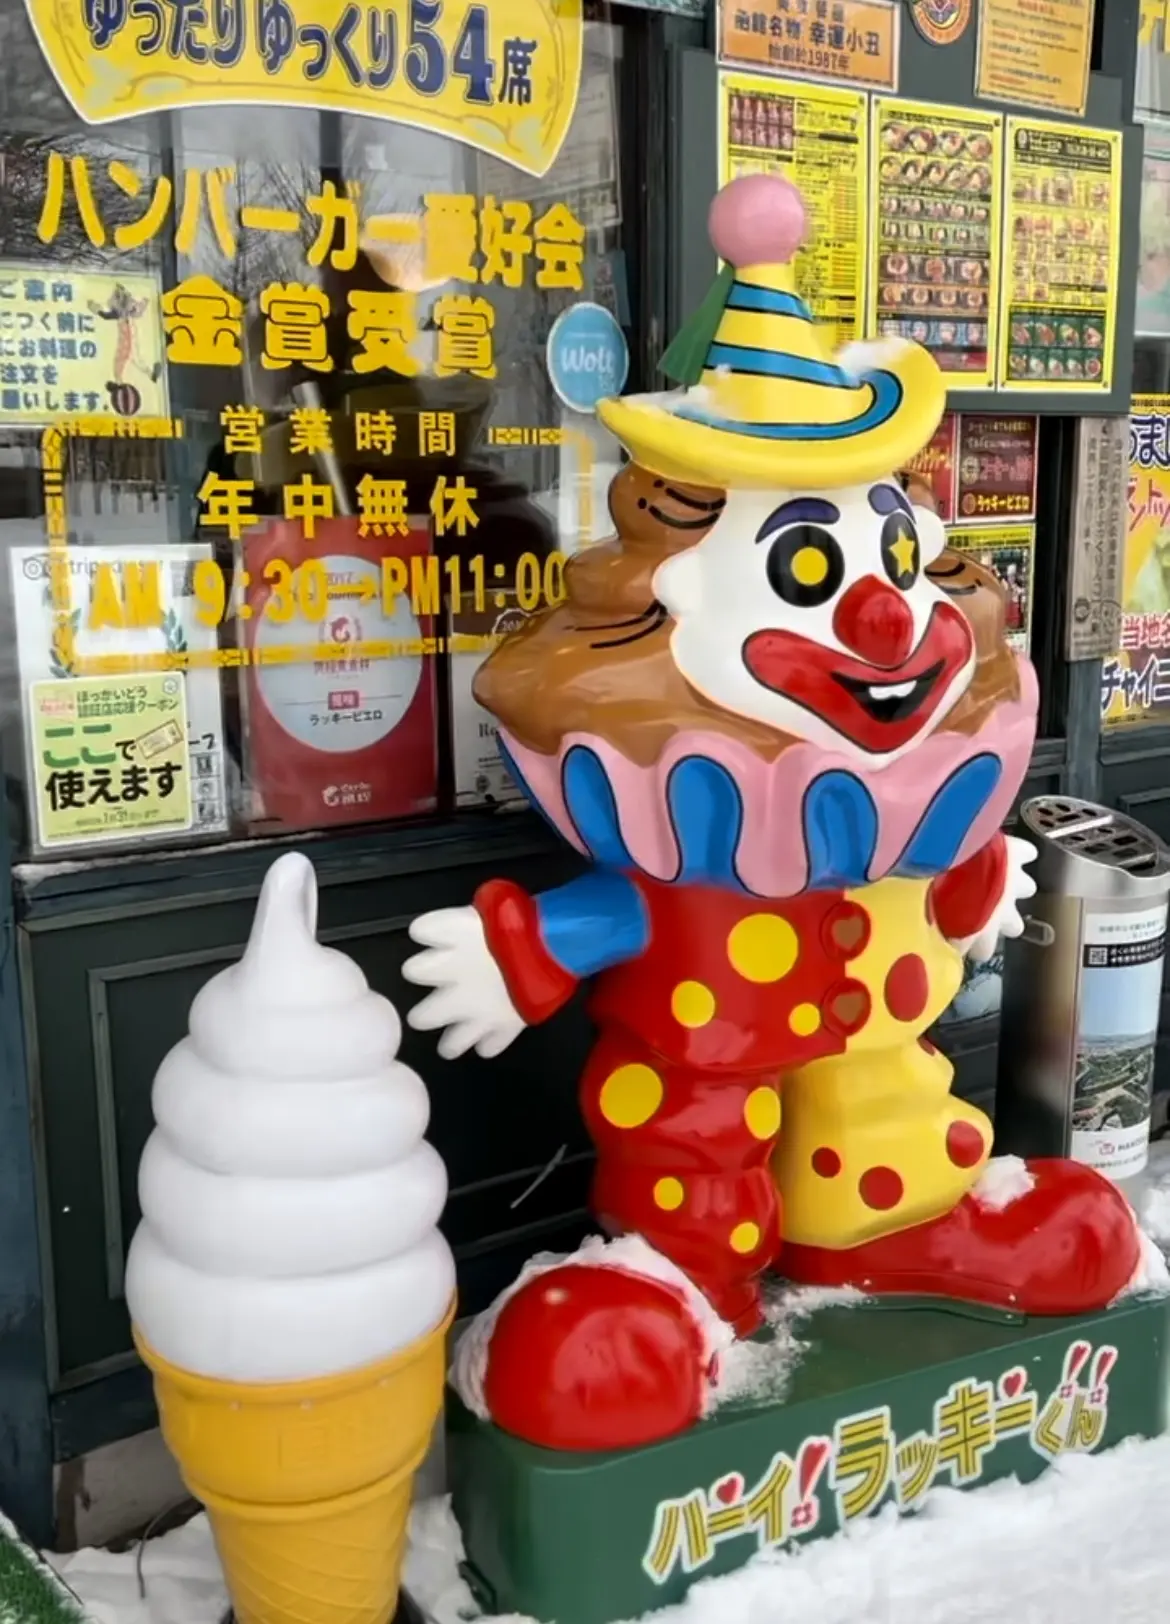 函館で有名なハンバーガーチェーン店「ラッキーピエロ」